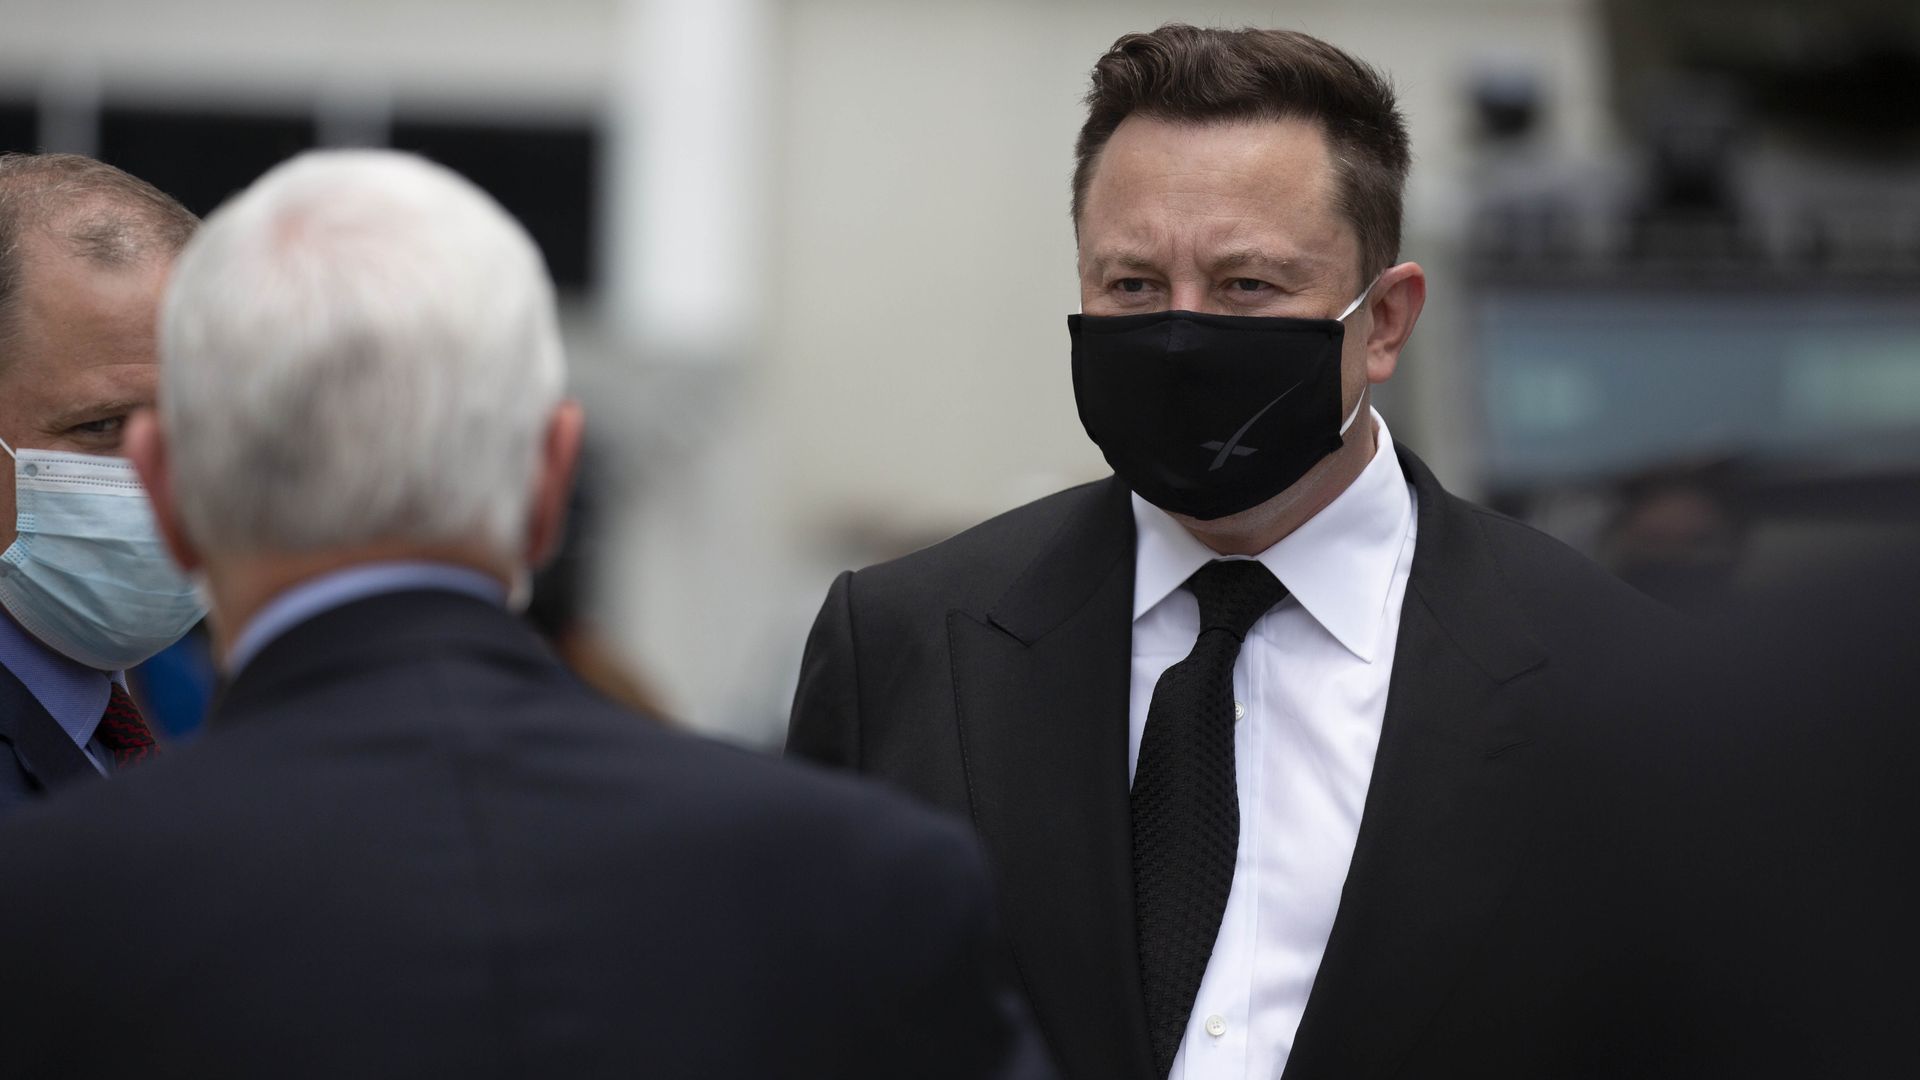 Elon Musk wears a face mask